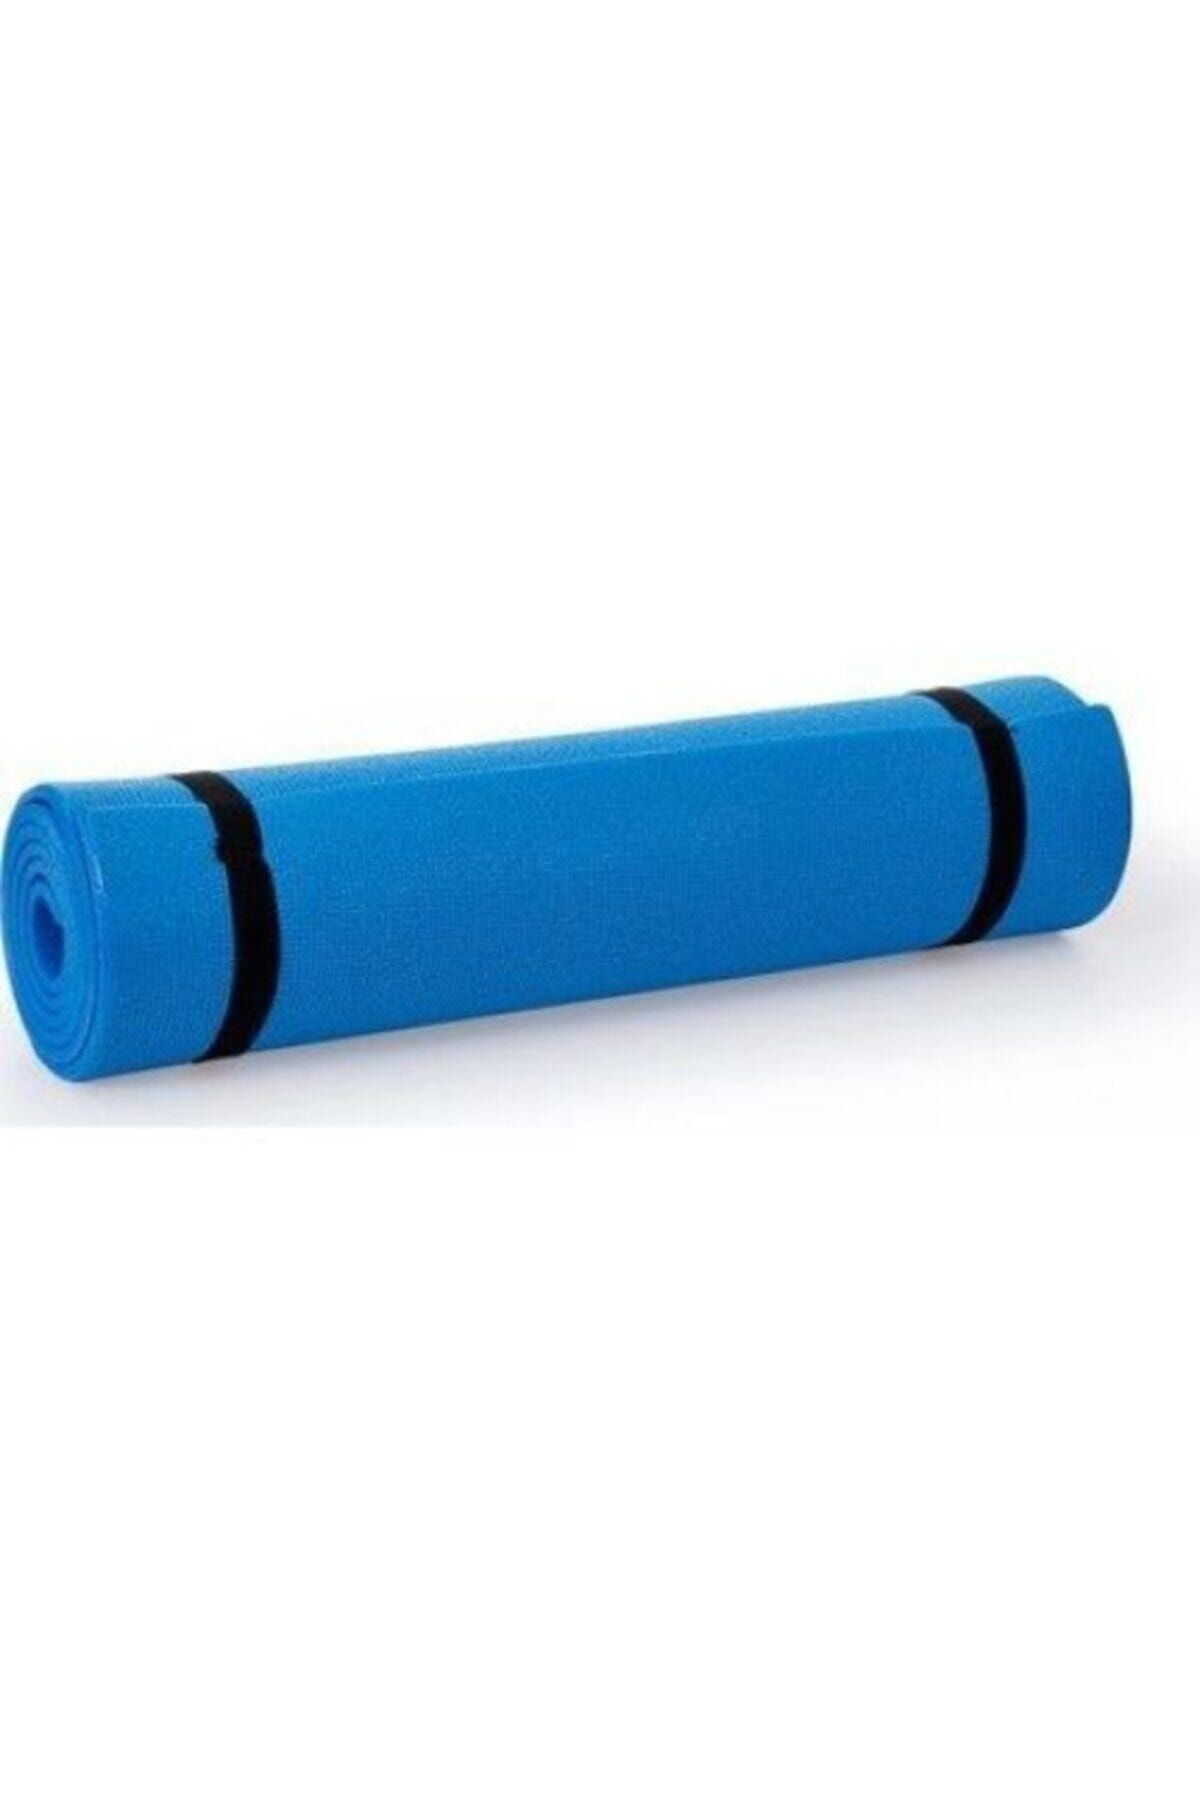 ZEN STYLE Mavi Çift Taraflı Yoga Pilates Matı Egzersiz Minderi 150x50x0,7 cm